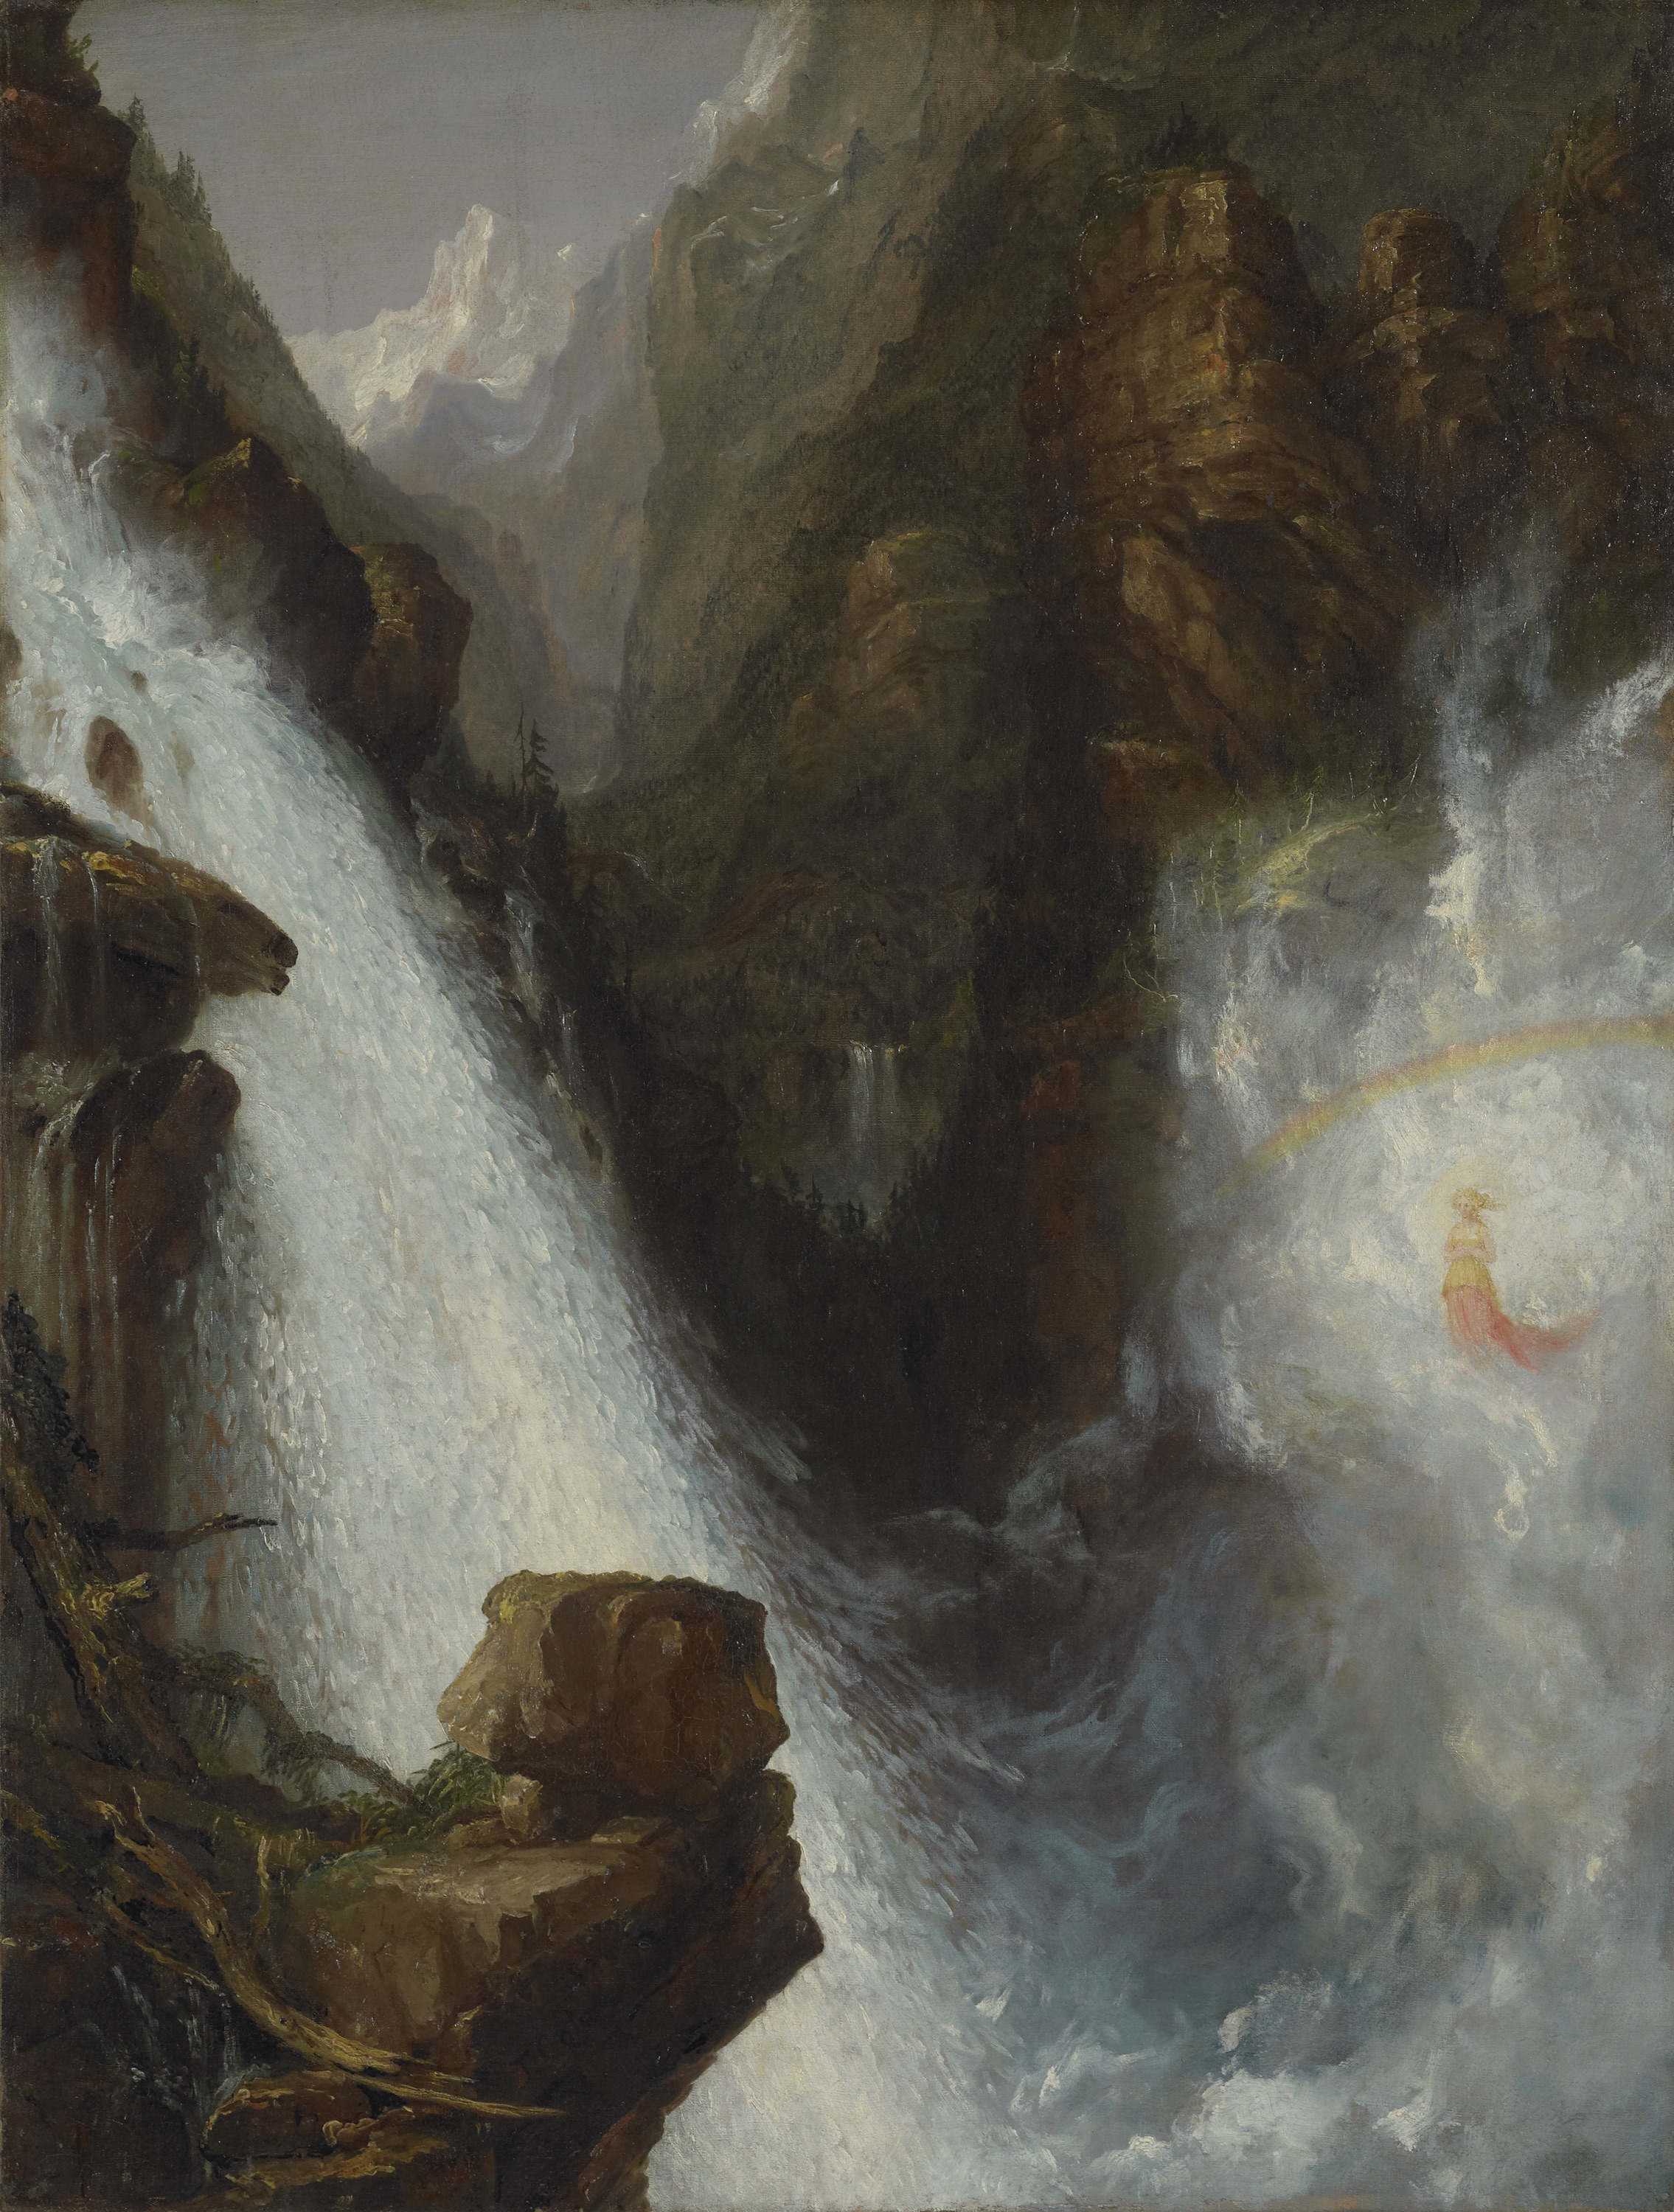 Scena z „Manfreda" Byrona by Thomas Cole - 1833 - 127 x 96.5 cm 